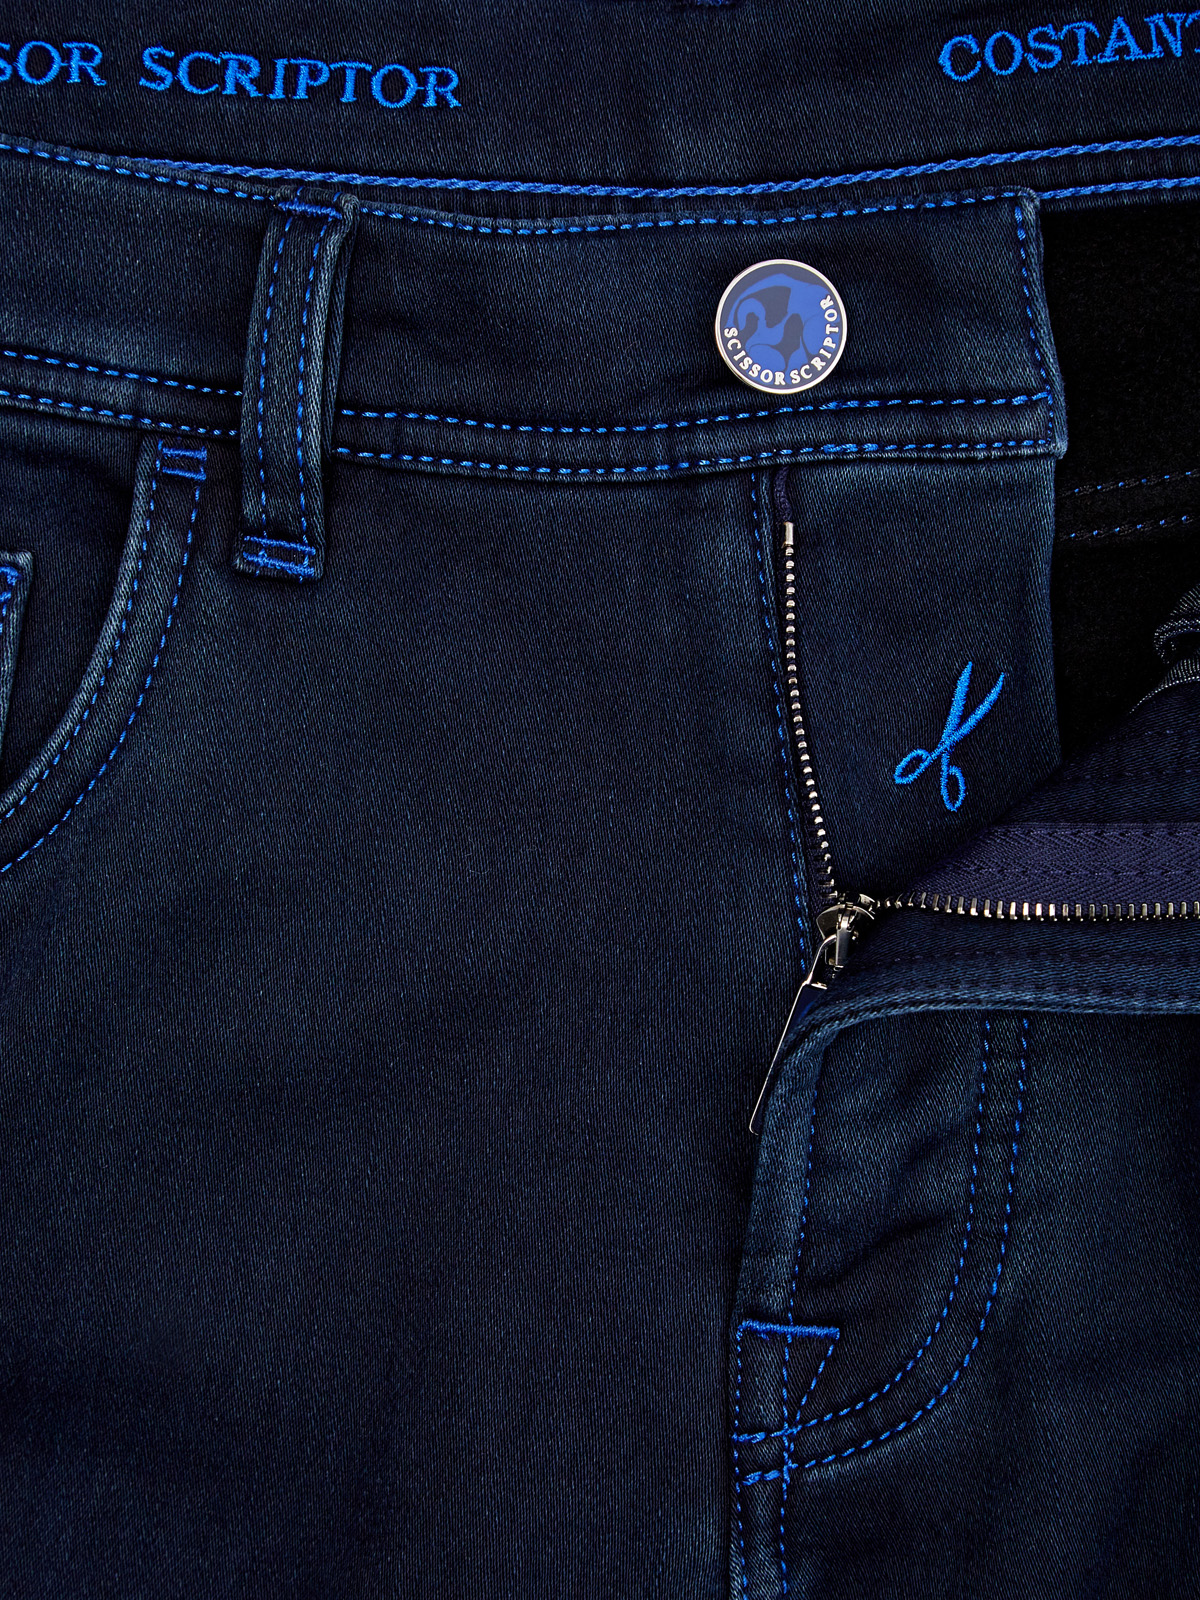 Утепленные джинсы Costantino с контрастной прострочкой SCISSOR SCRIPTOR, цвет синий, размер 50;52;54;54;56;58;60;48 - фото 6